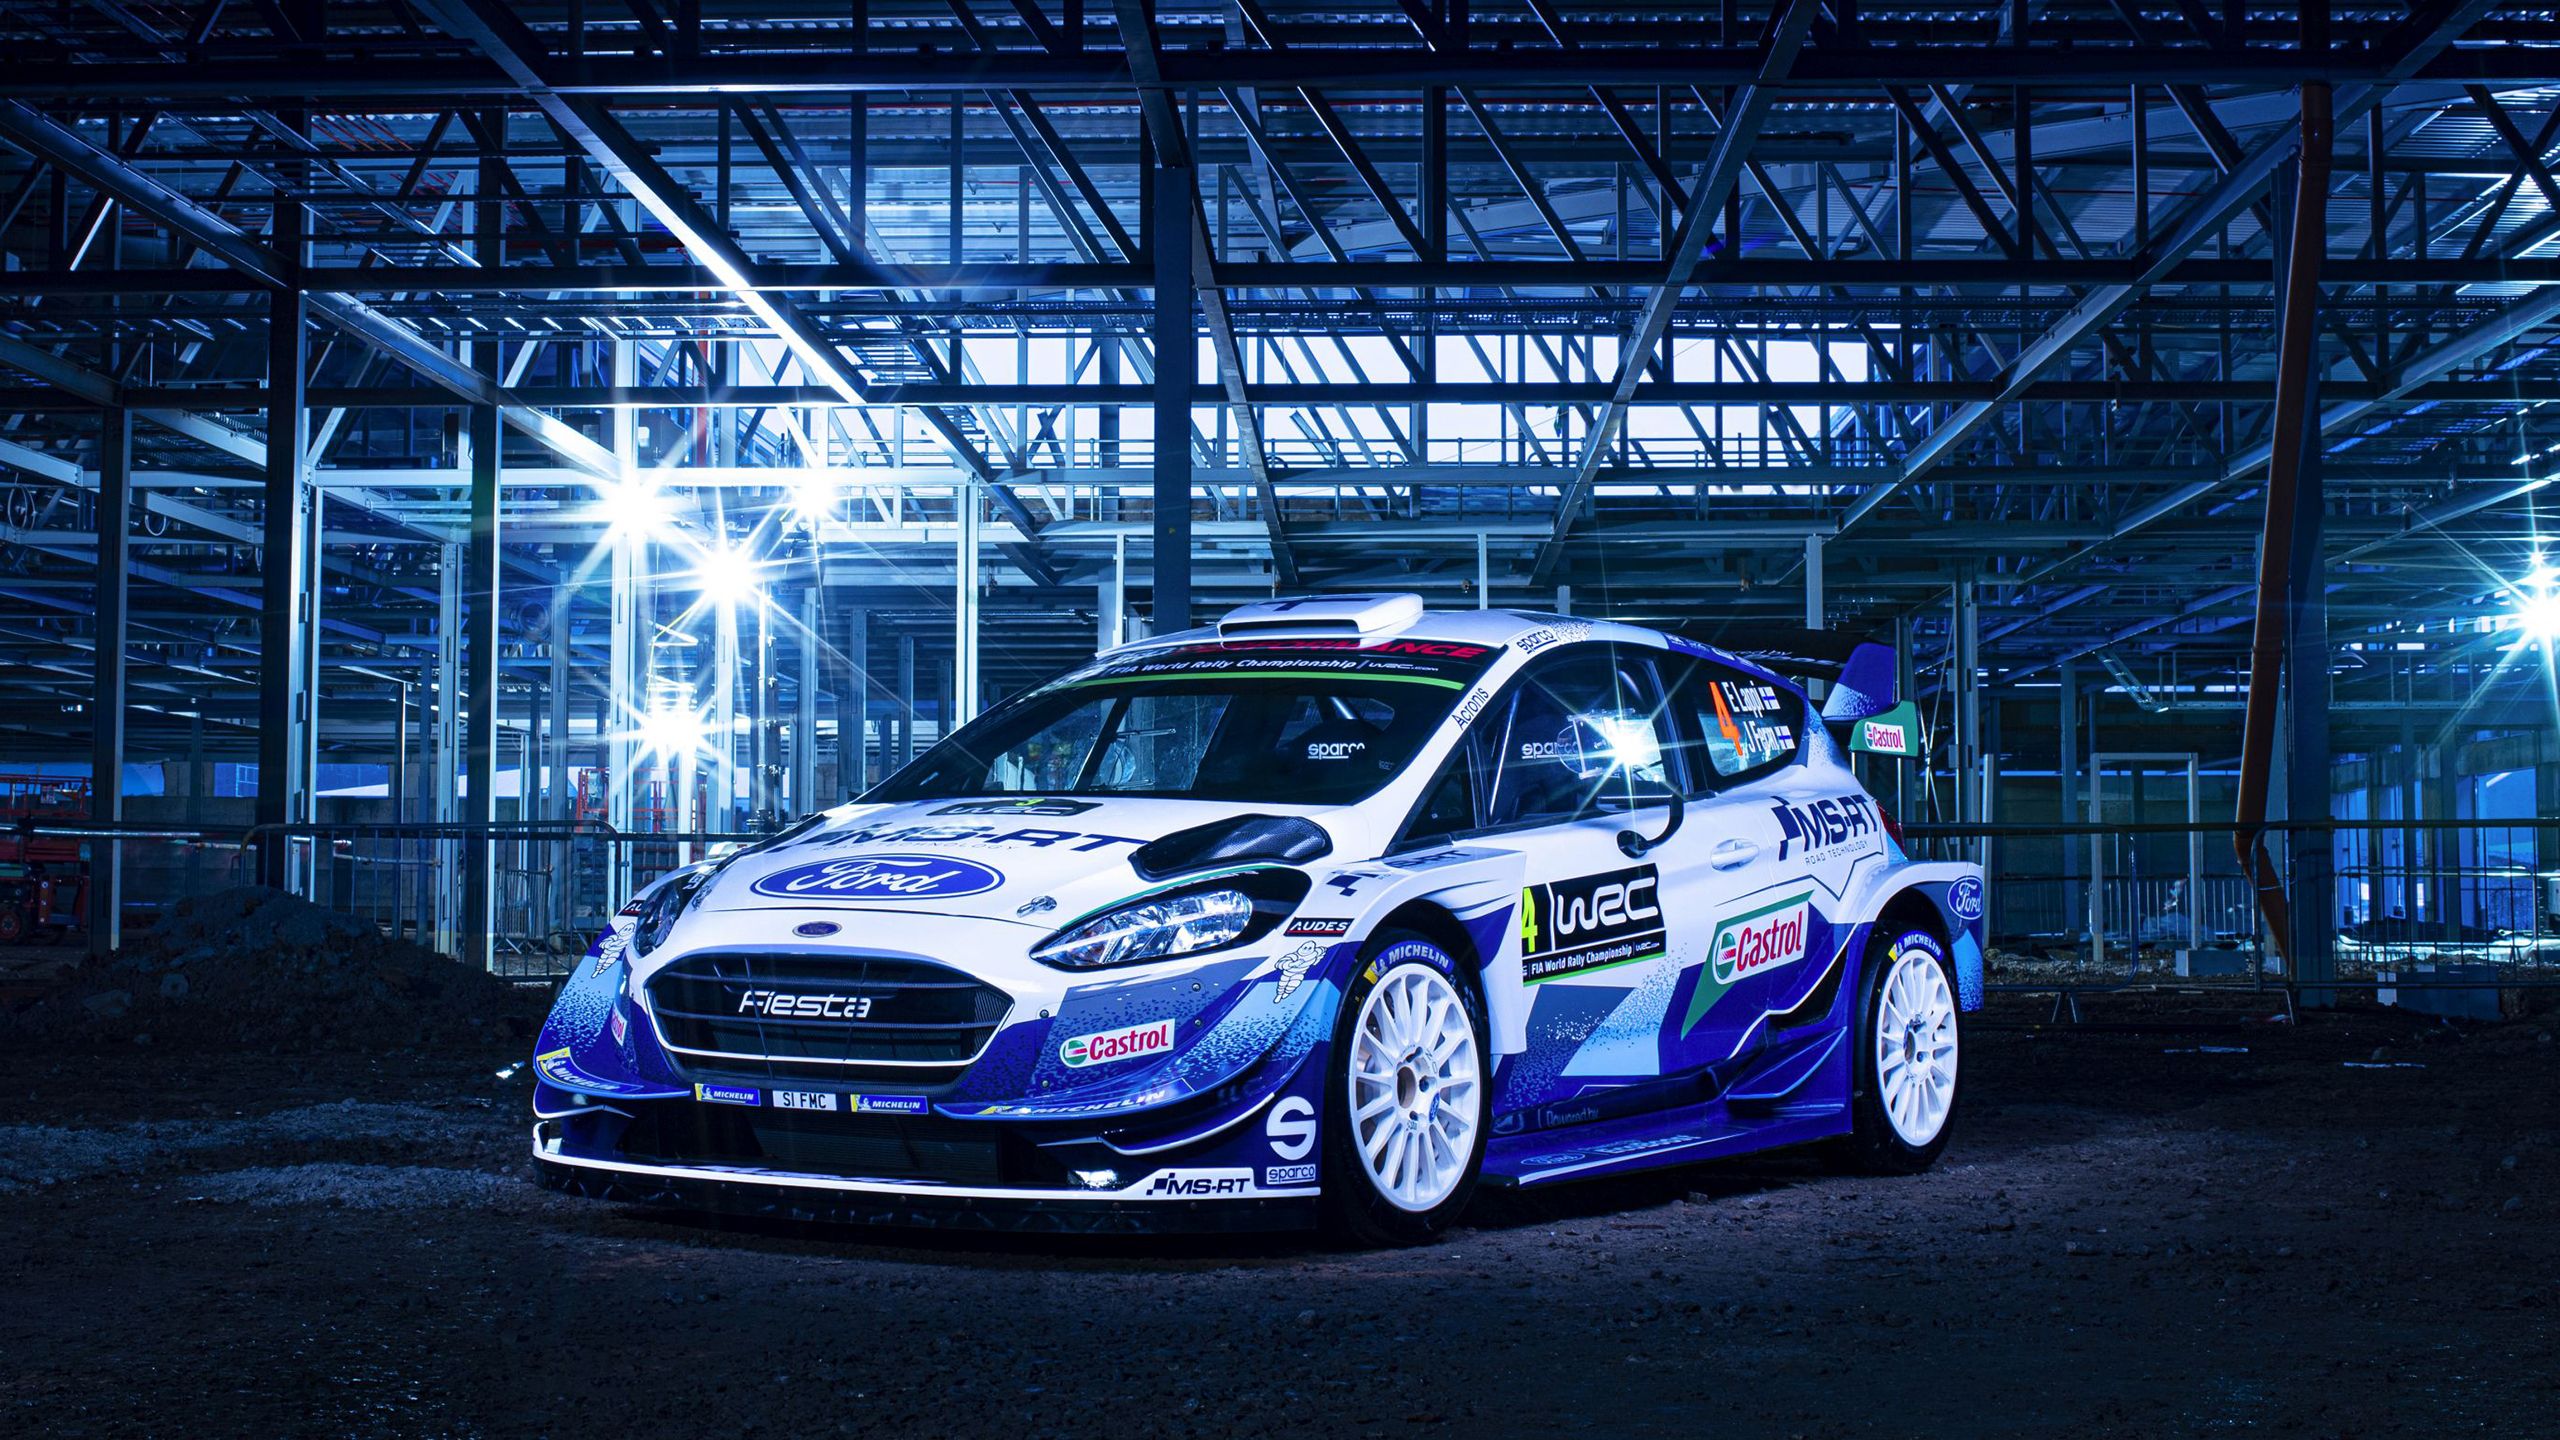 2560x1440 M Sport Ford Fiesta WRC 2020 Wallpaper. HD Car Wallpaper on WallpaperBat